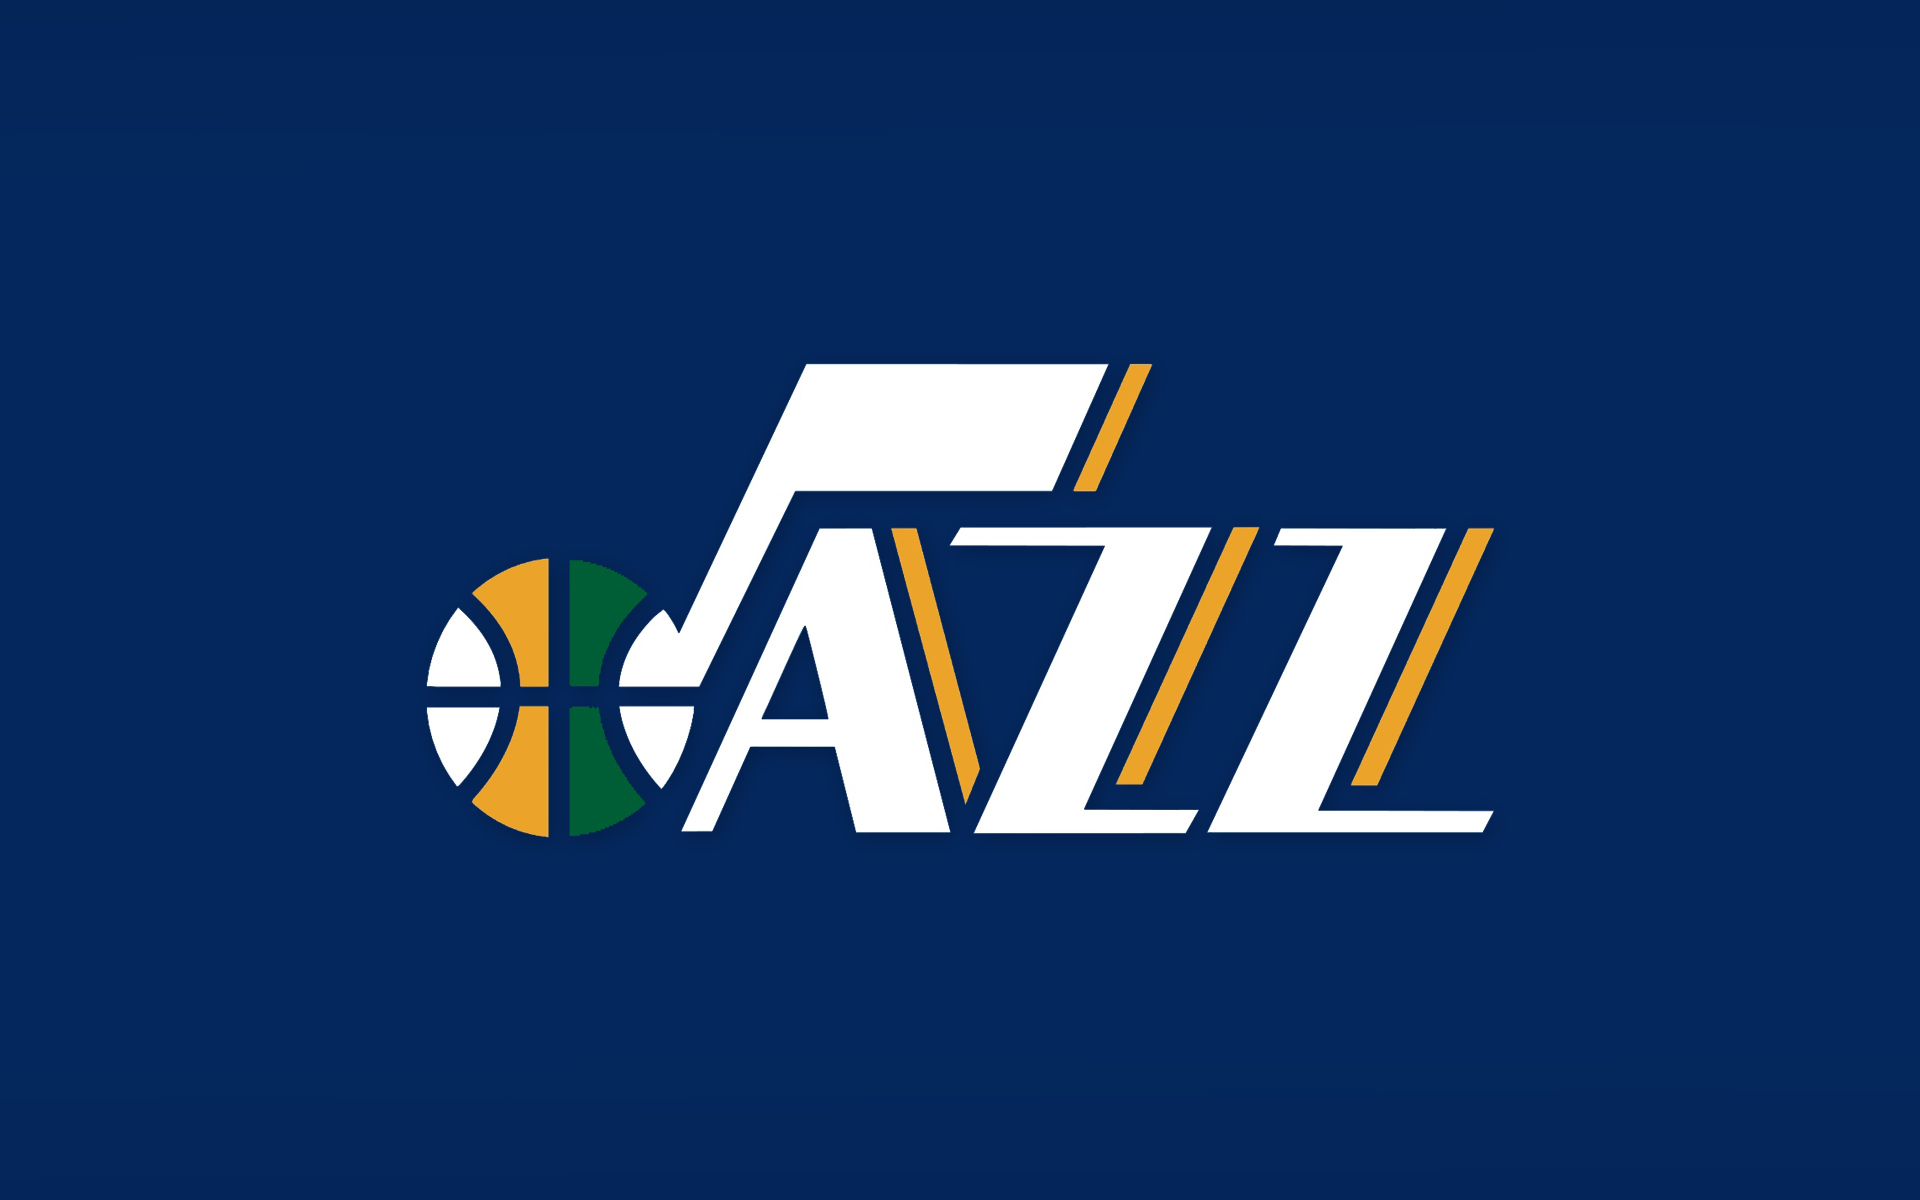 Utah Jazz Nba Basketball Wallpaper Background